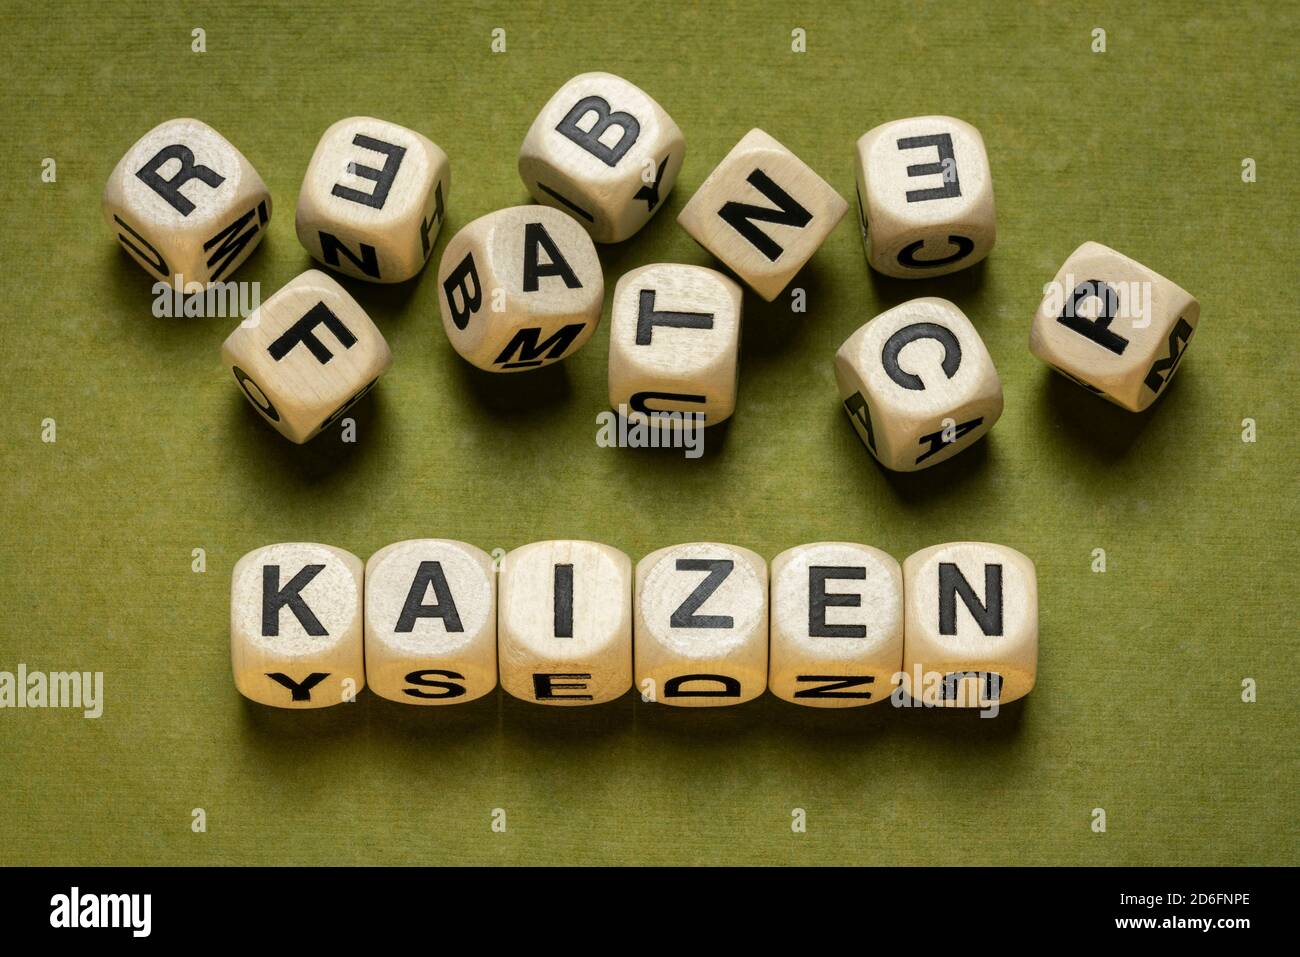 kaizen Wortabstrakt in Holzbuchstabenwürfeln gegen grünes handgemachtes Papier in Grüntönen, japanische kontinuierliche Verbesserung und eine Änderung für bessere Konz Stockfoto